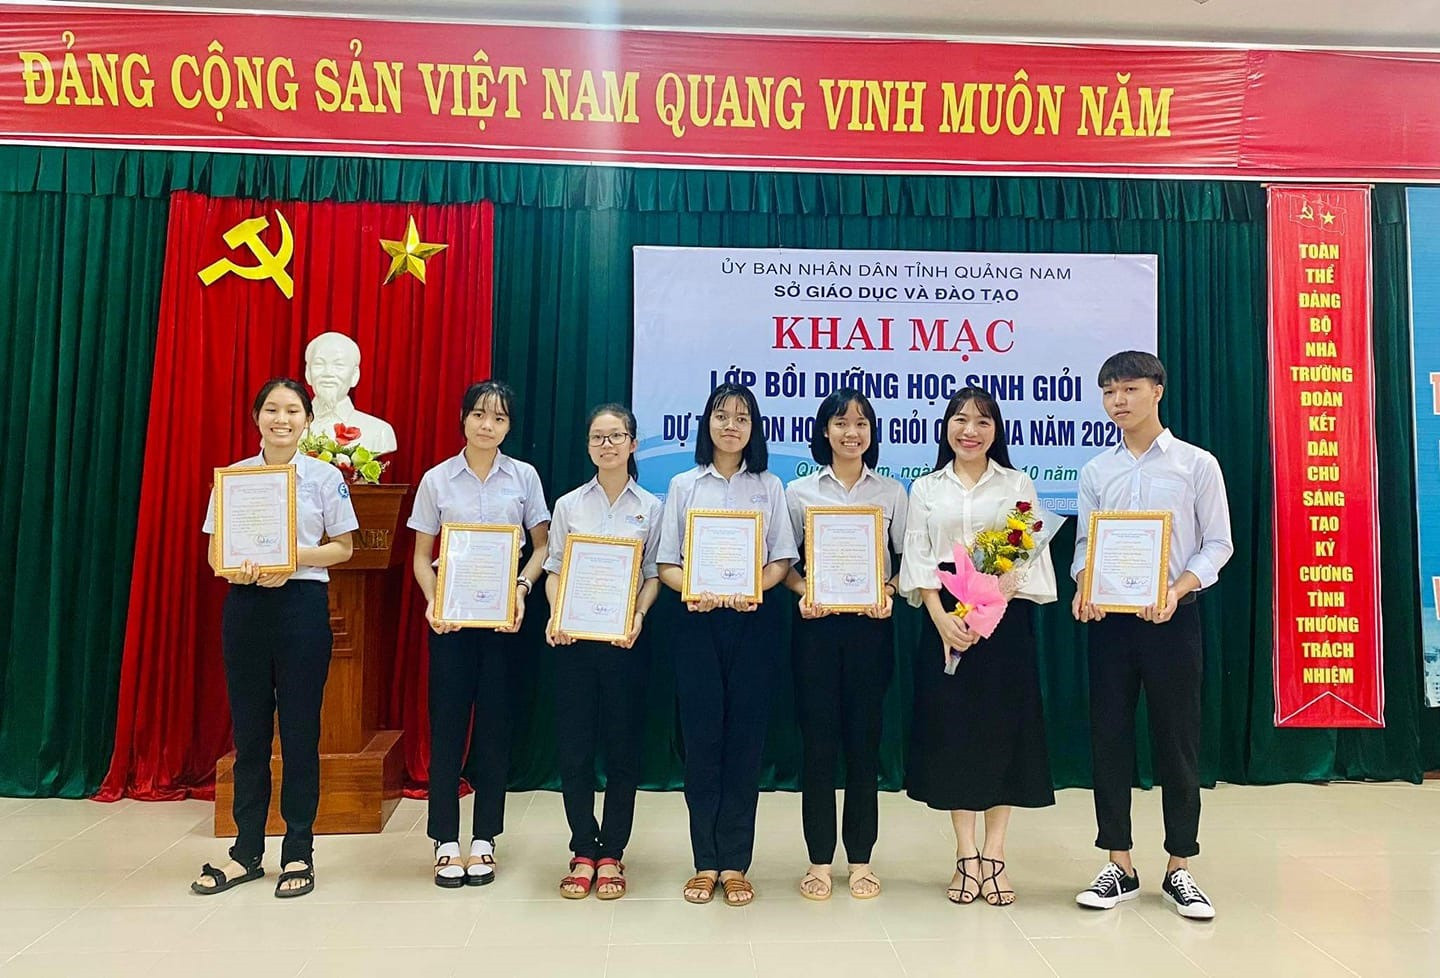 Đội tuyển học sinh giỏi tỉnh dự thi quốc gia môn Ngữ văn của Trường THPT chuyên Lê Thánh Tông. Ảnh: Nhà trường cung cấp